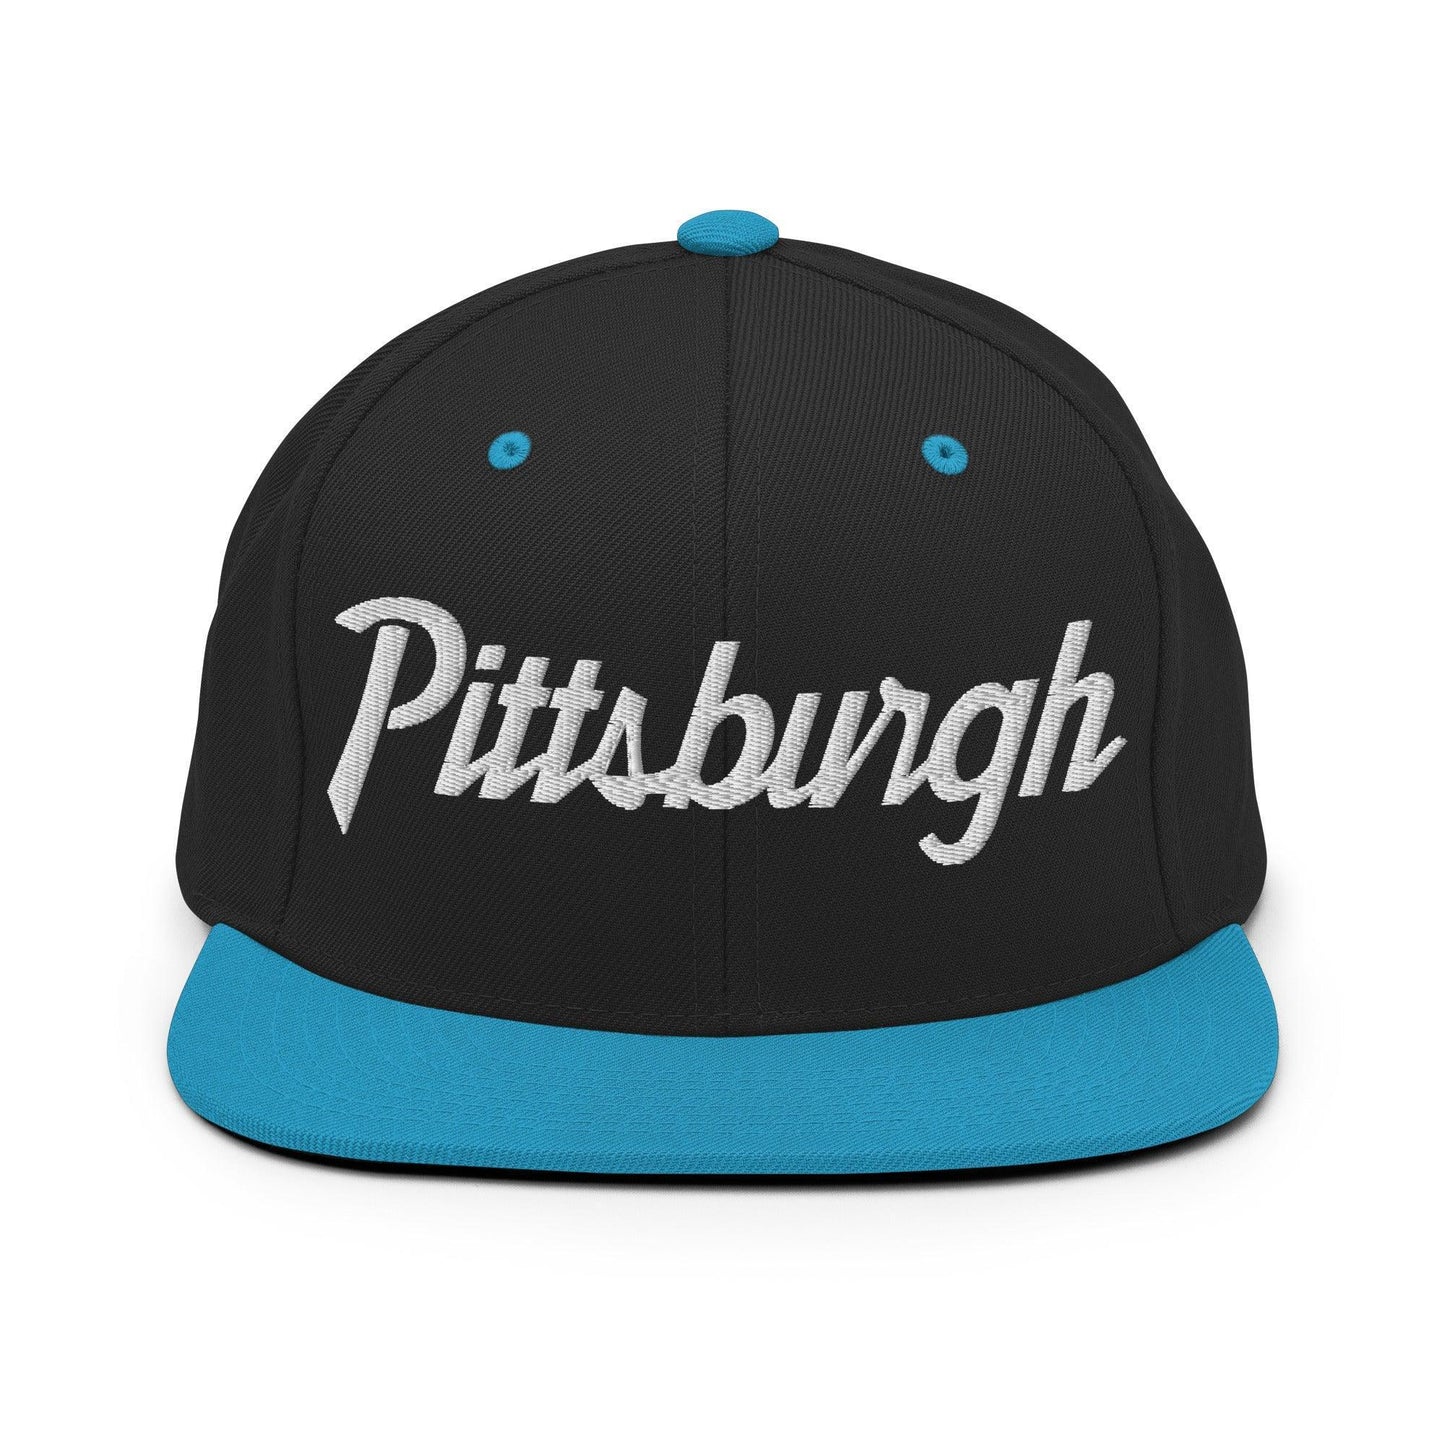 Pittsburgh Script Snapback Hat Black/ Teal